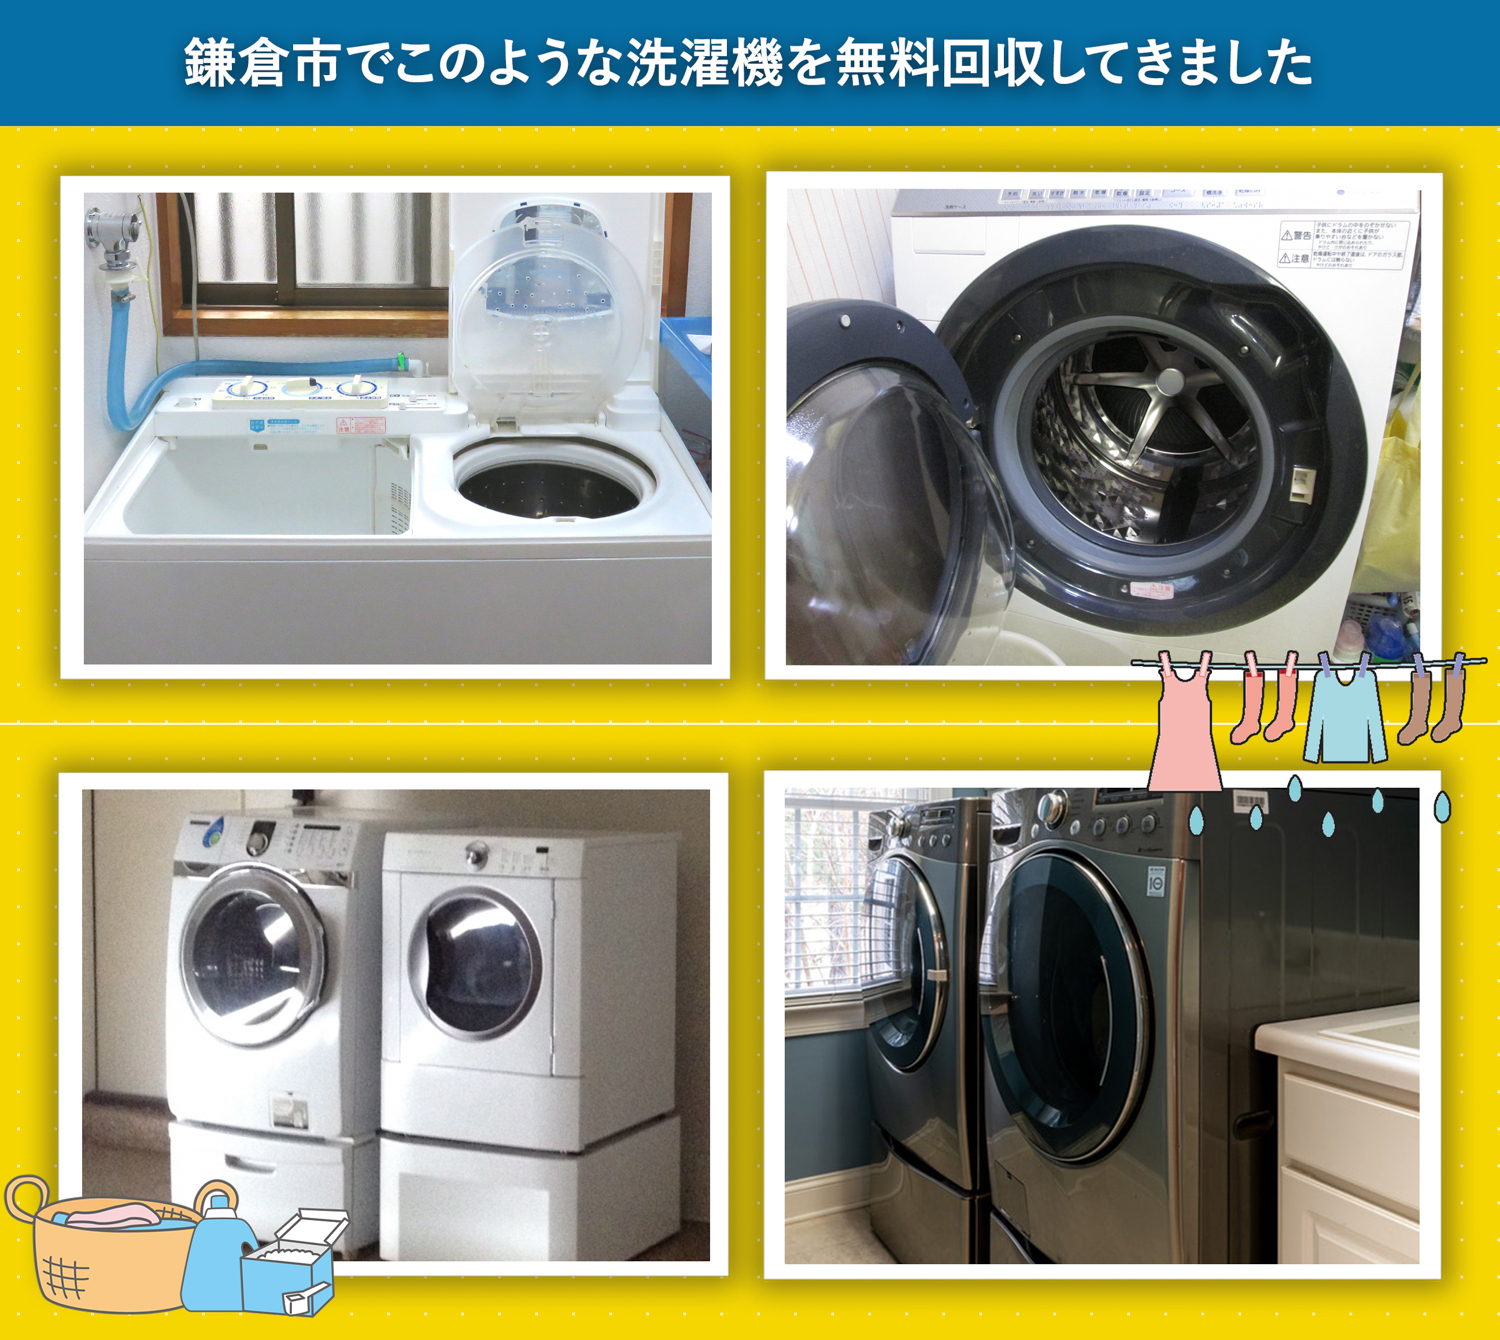 鎌倉市でこのような洗濯機を無料回収してきました。